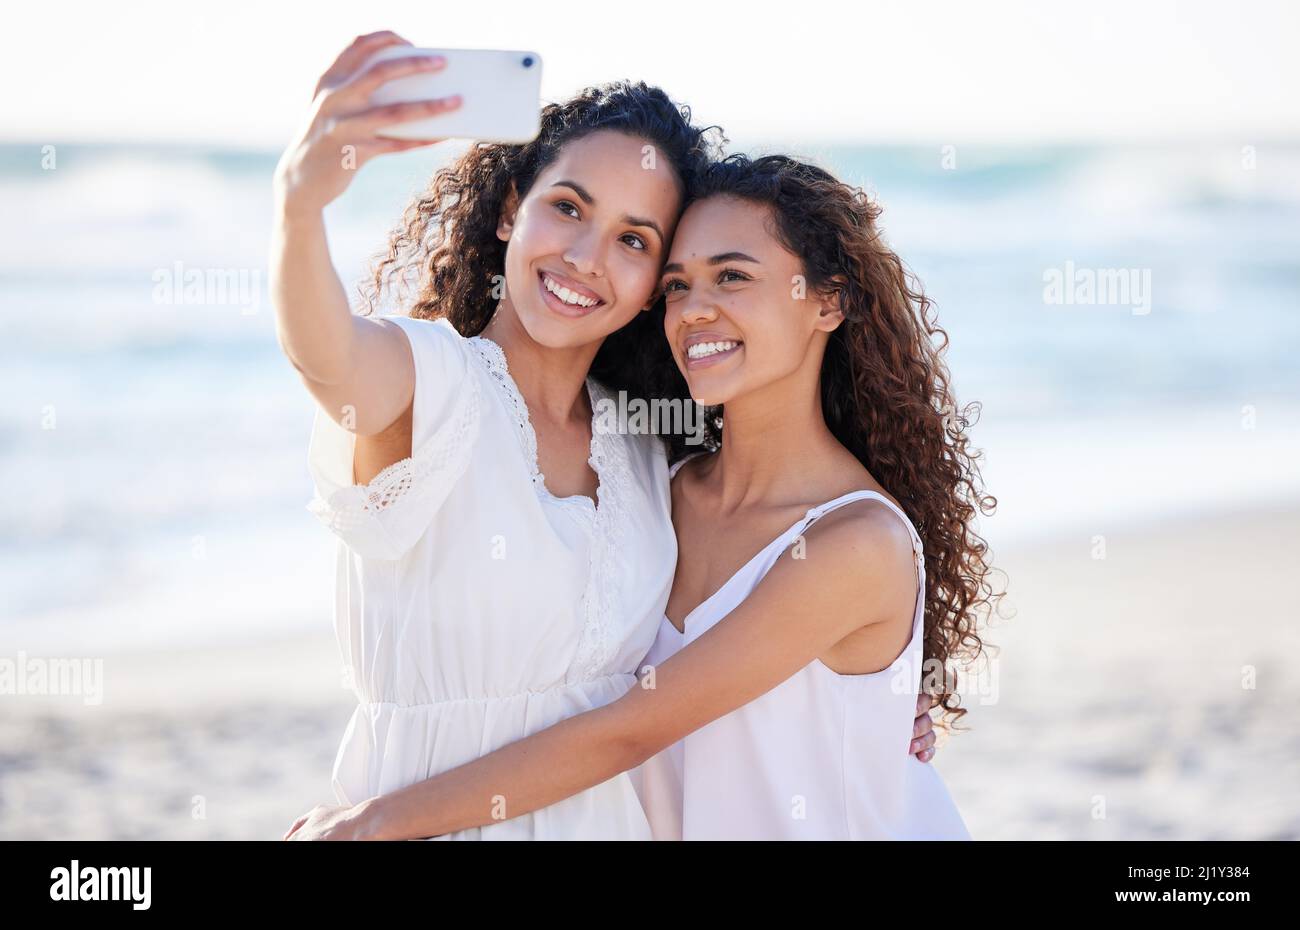 Wie glücklich bin ich, sie in meinem Leben zu haben. Aufnahme von zwei jungen Frauen, die am Strand Selfies machen. Stockfoto